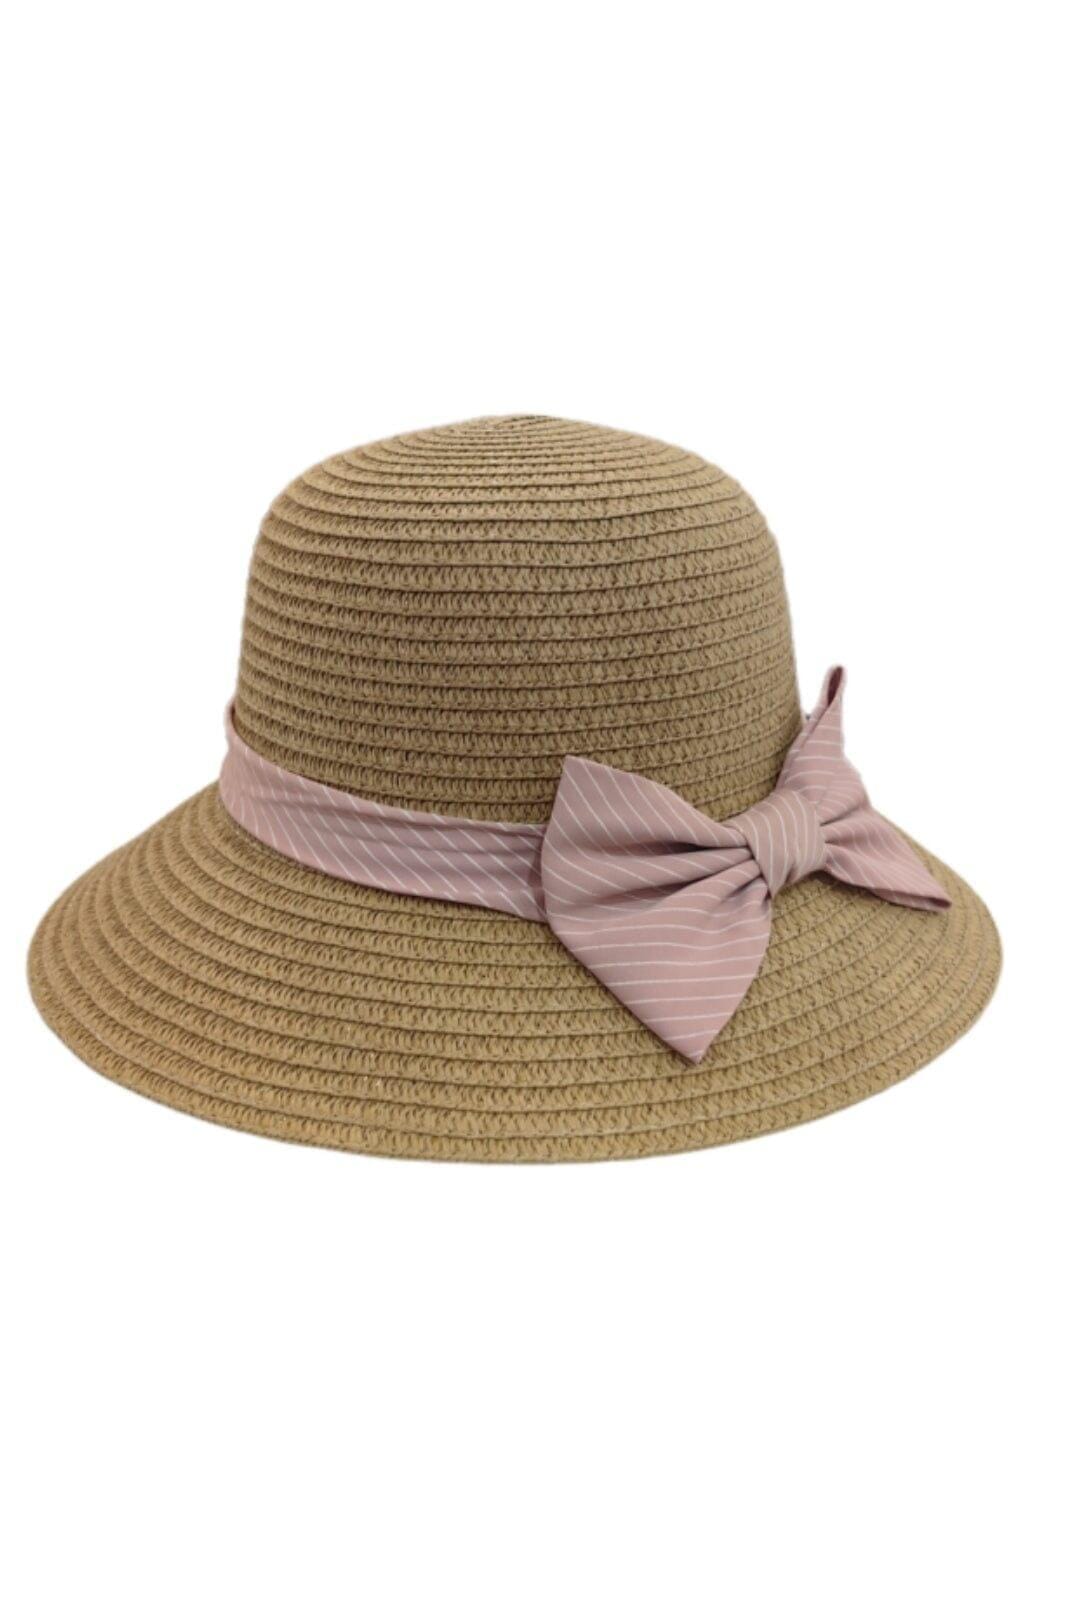 Anobel Copenhagen - Straw Hat With Striped Bow Tie 3cp2085 - Brown Hatte 